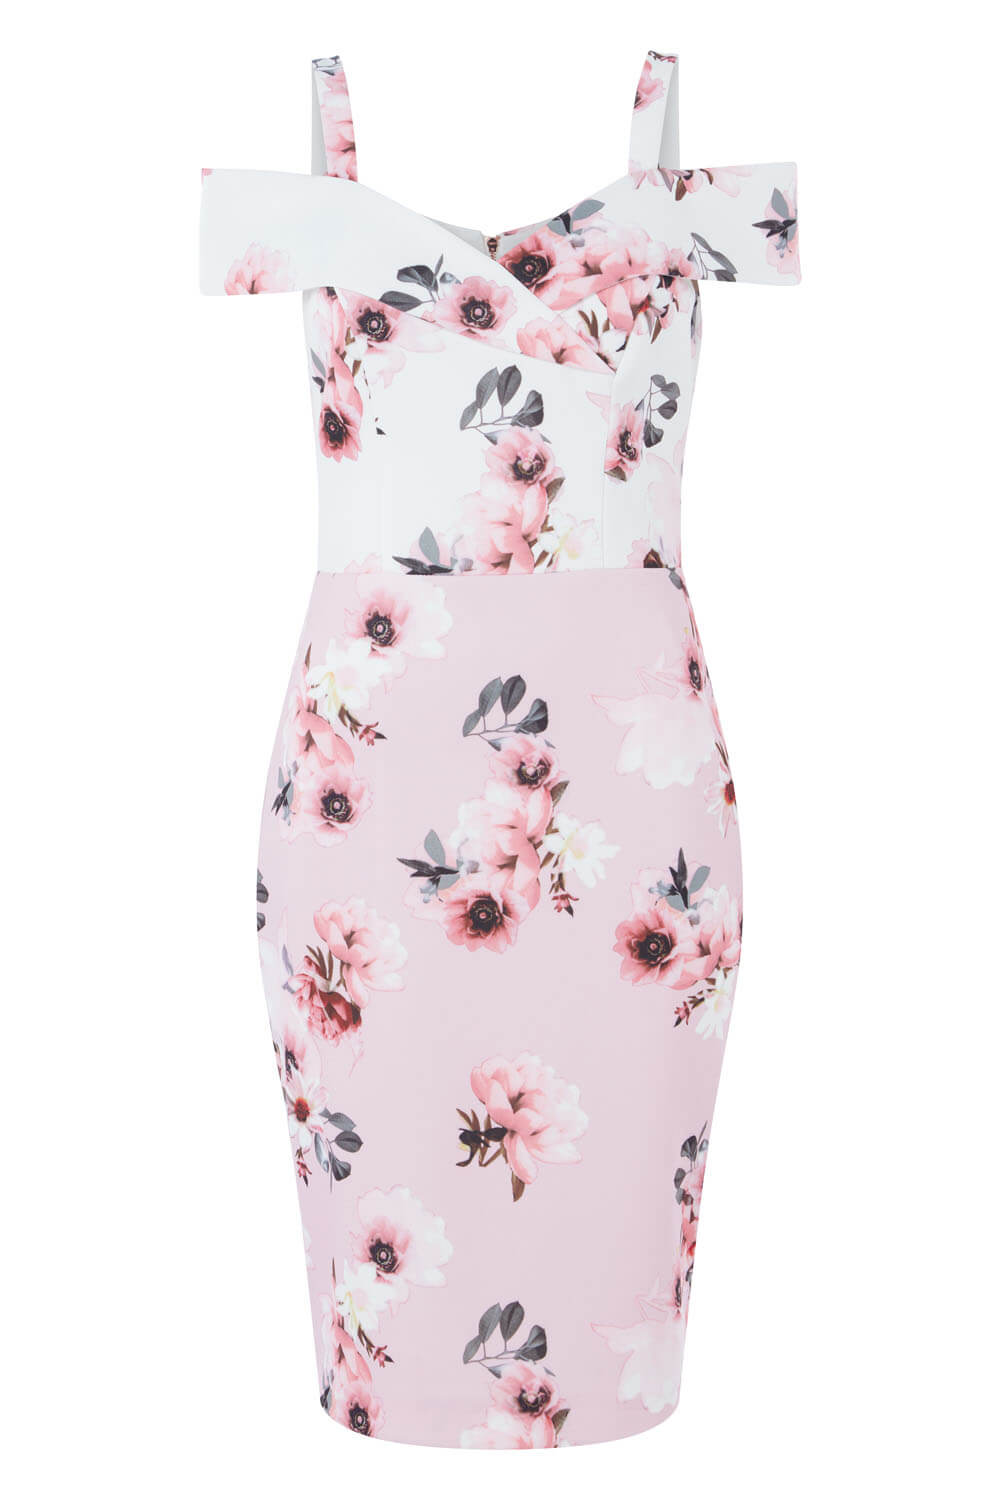 Light Pink Floral Print Cold Shoulder Dress, Image 5 of 5